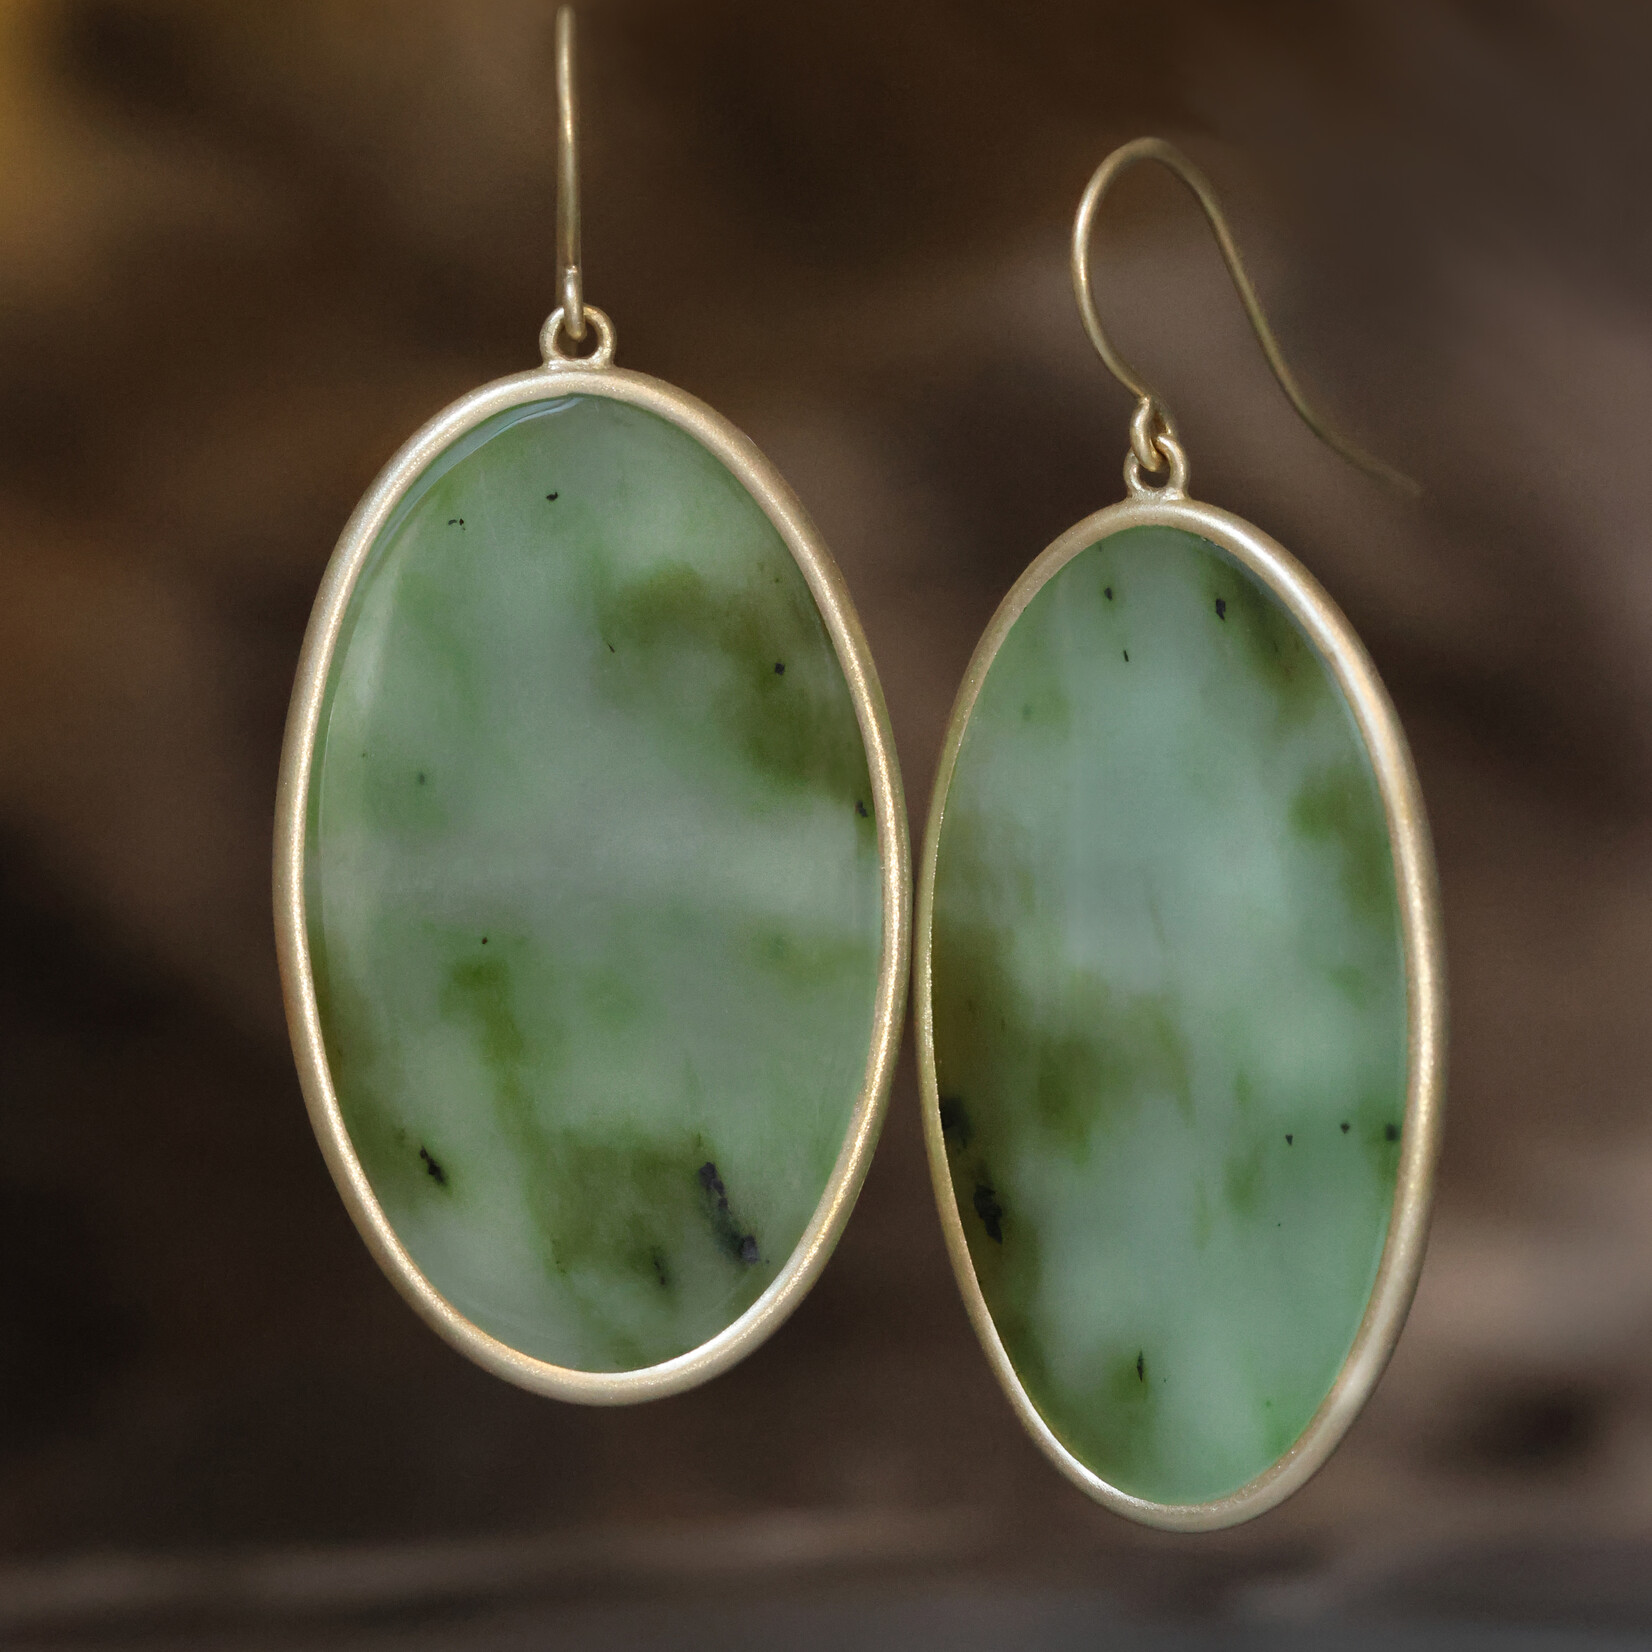 Baxter Moerman Siberian Green Jade Drop Earrings - Oval